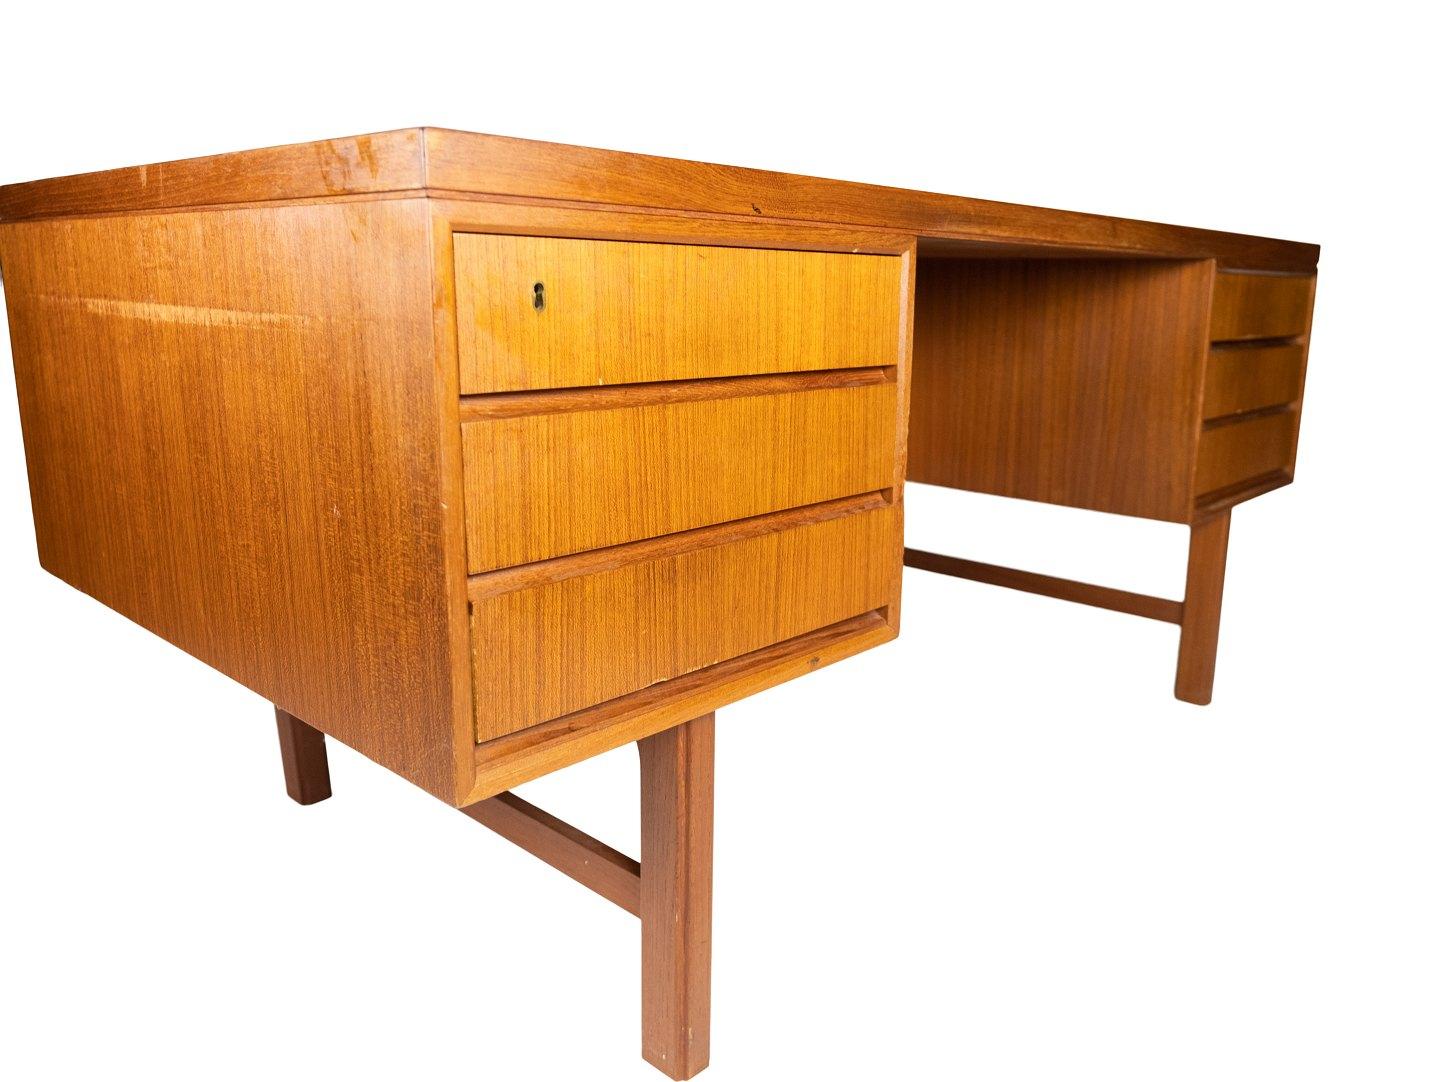 Der Schreibtisch aus Teakholz, entworfen von Omann Junior in den 1960er Jahren, ist ein herausragendes Beispiel für dänisches Möbeldesign aus dieser Zeit.

Mit seinem charakteristischen Teakholzdesign strahlt der Schreibtisch eine warme und